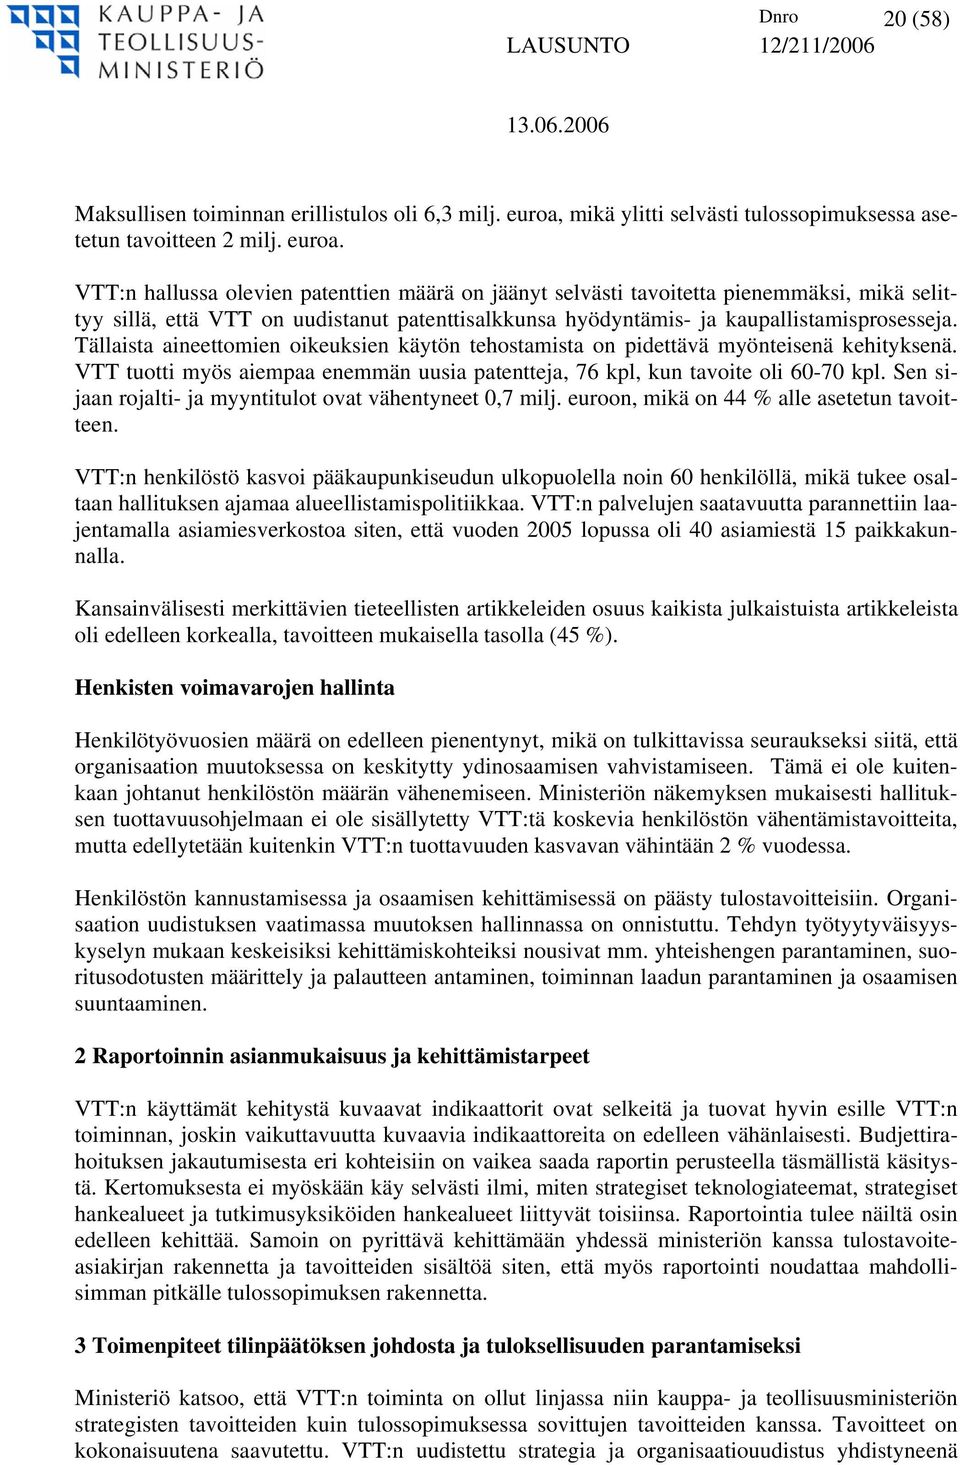 VTT:n hallussa olevien patenttien määrä on jäänyt selvästi tavoitetta pienemmäksi, mikä selittyy sillä, että VTT on uudistanut patenttisalkkunsa hyödyntämis- ja kaupallistamisprosesseja.